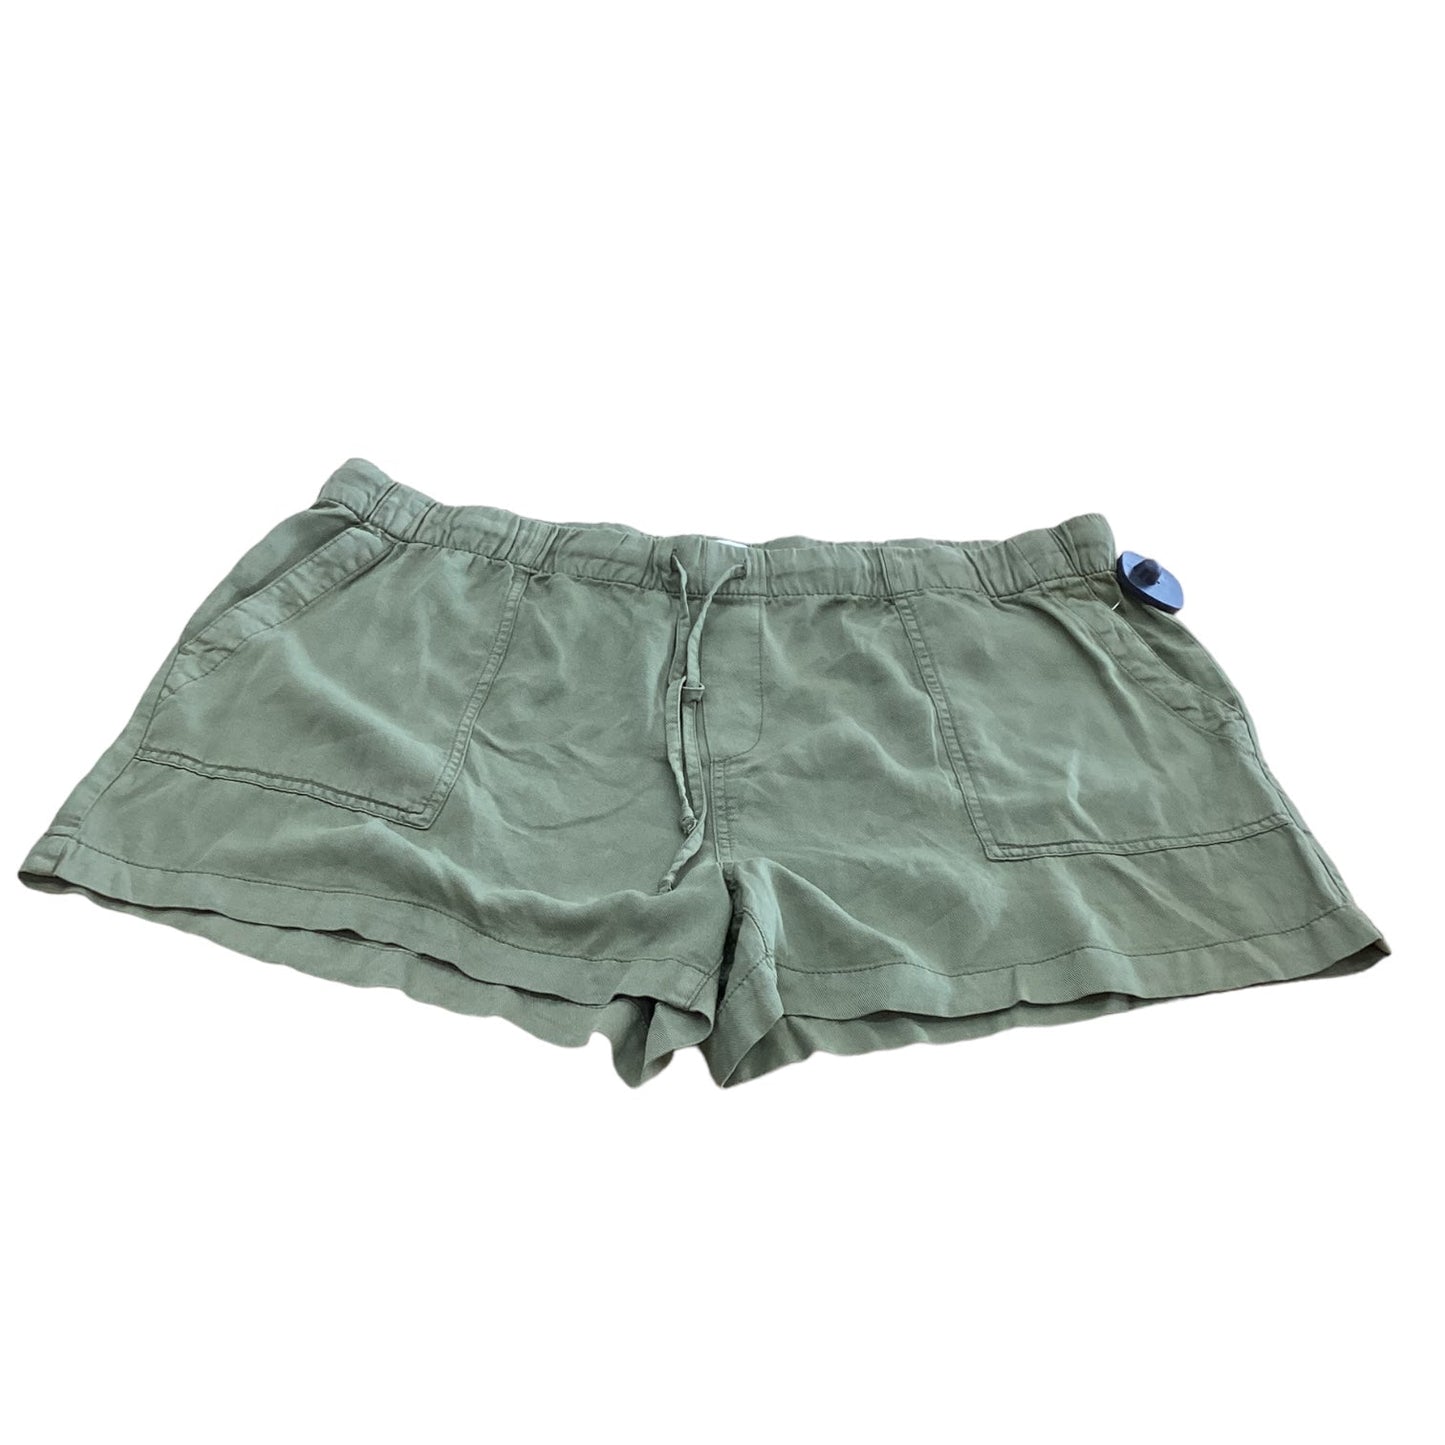 Green Shorts Gap, Size 14